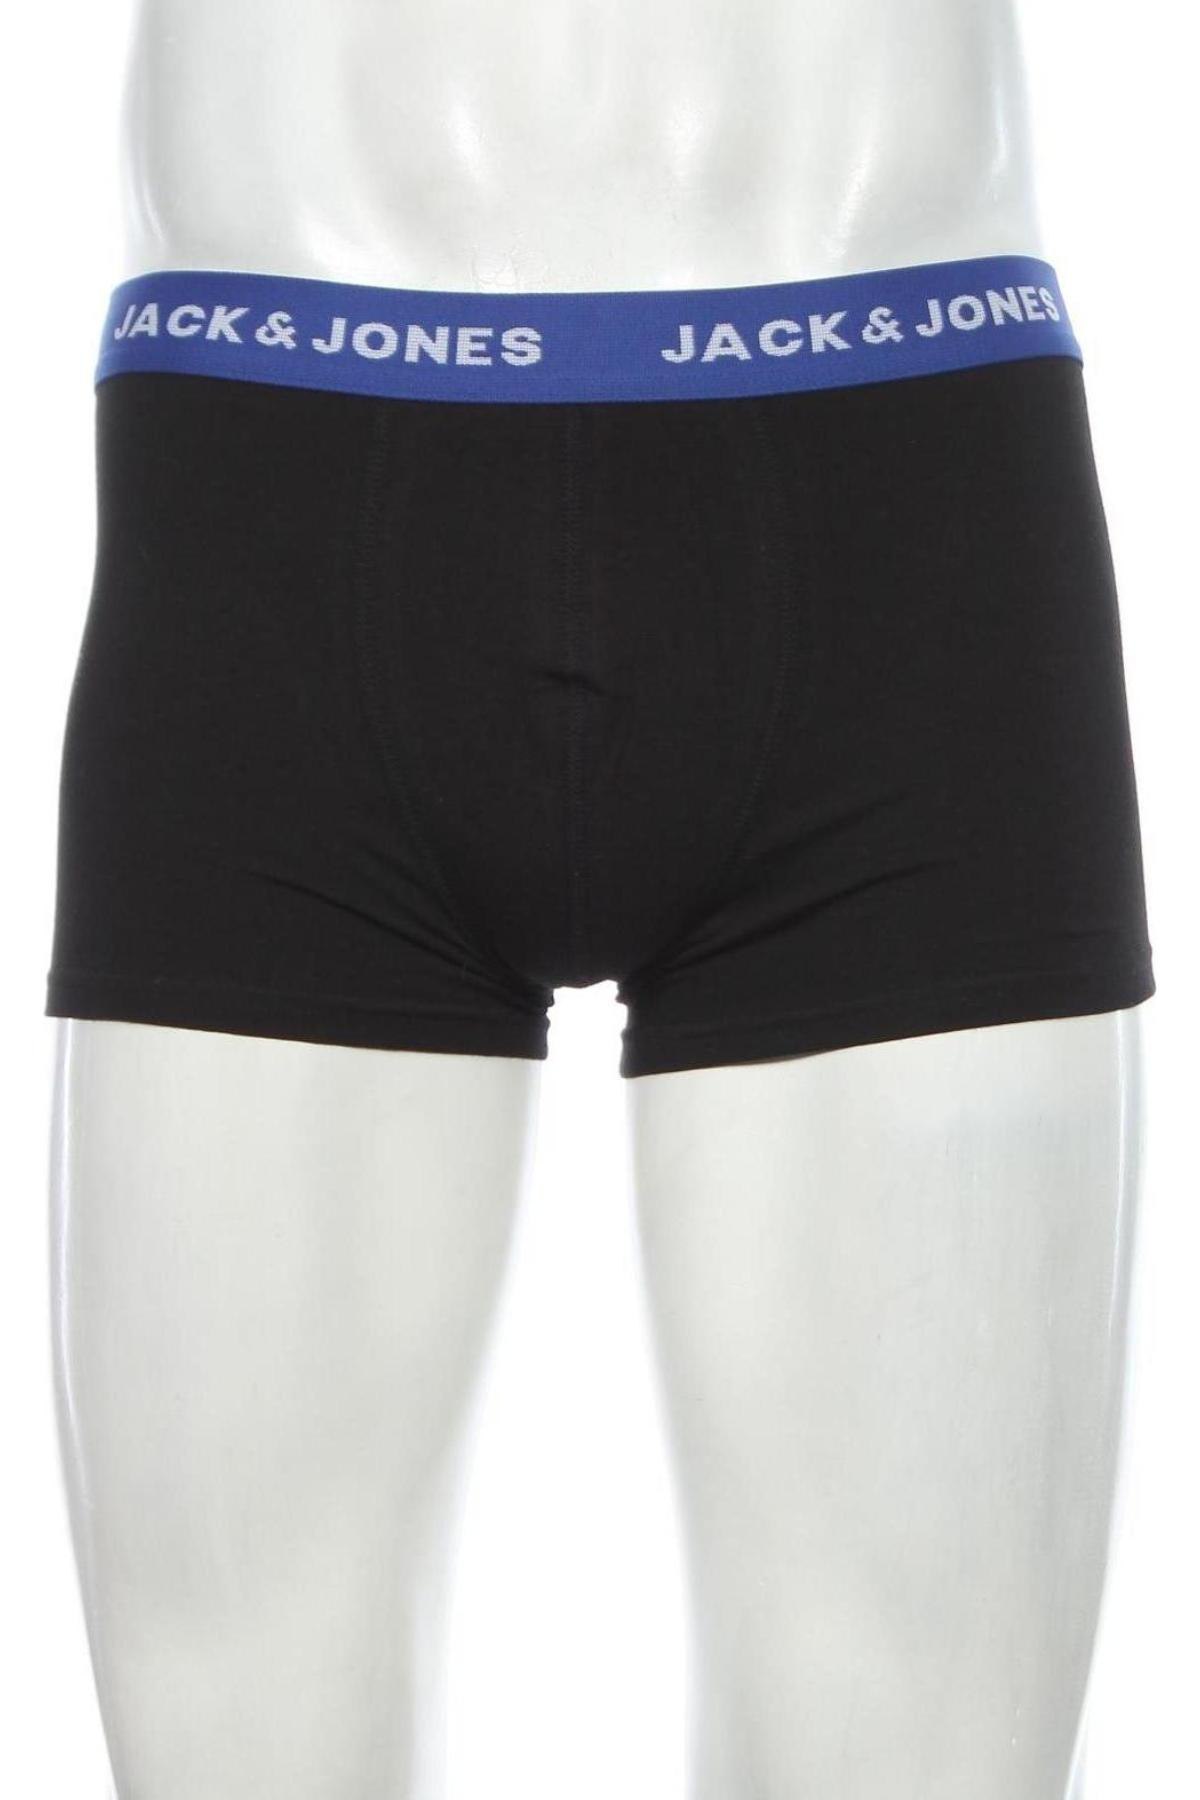 Pánske boxserky Jack & Jones, Velikost M, Barva Černá, 95% bavlna, 5% elastan, Cena  116,00 Kč